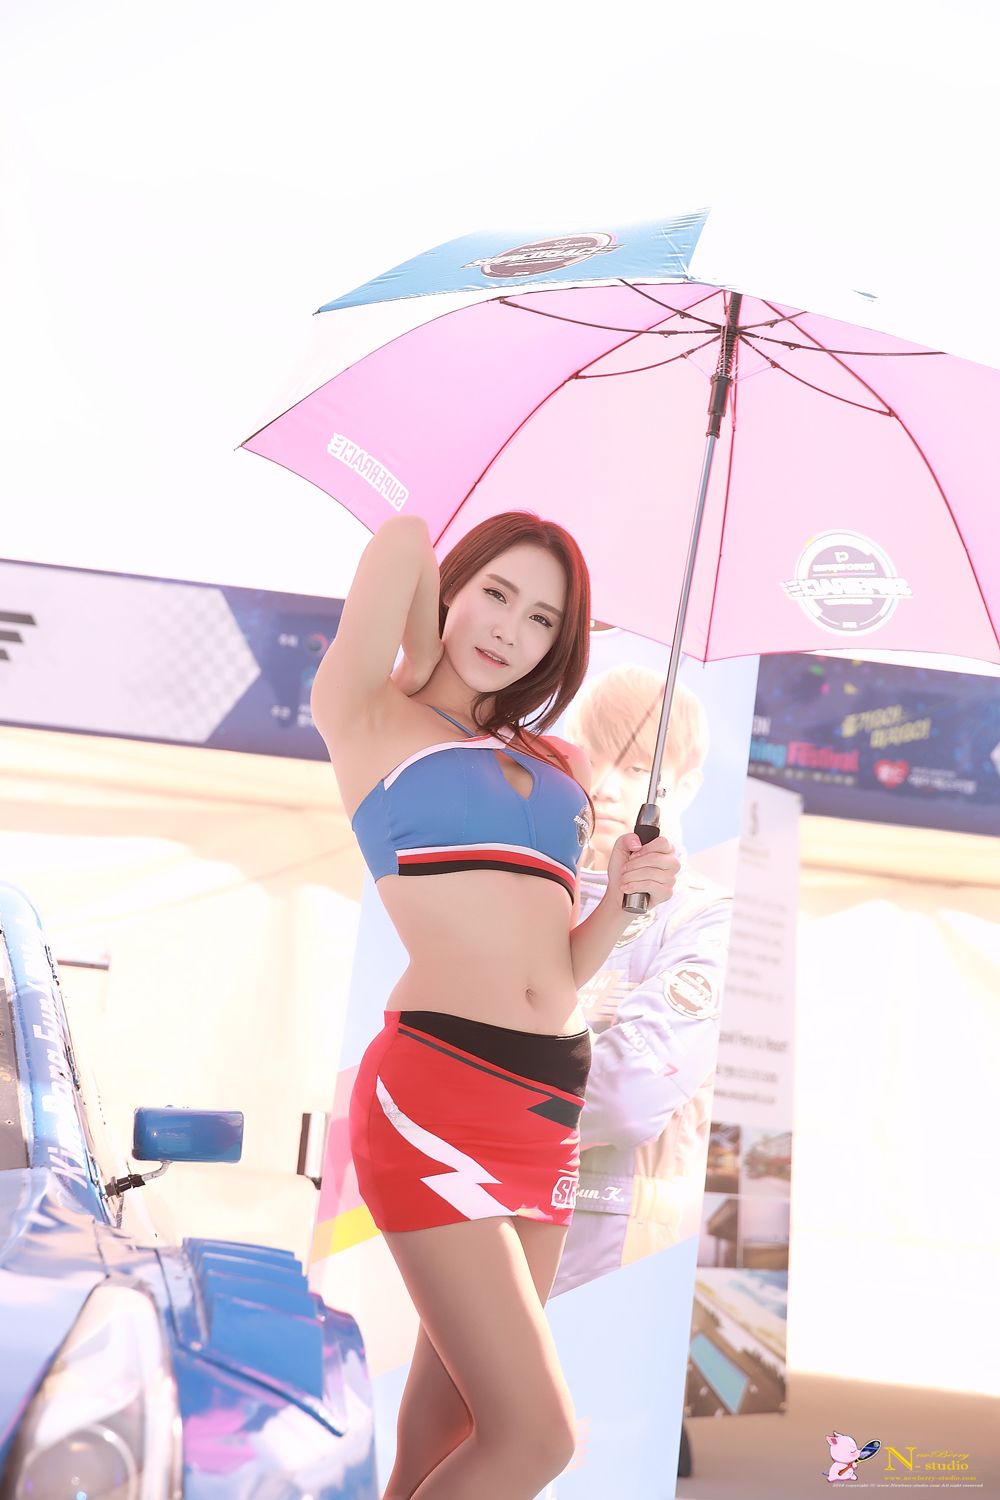 Image-Korean-Racing-Model-Lee-Soo-Yeon-Incheon-KoreaTuning-Festival-Show-TruePic.net- Picture-56